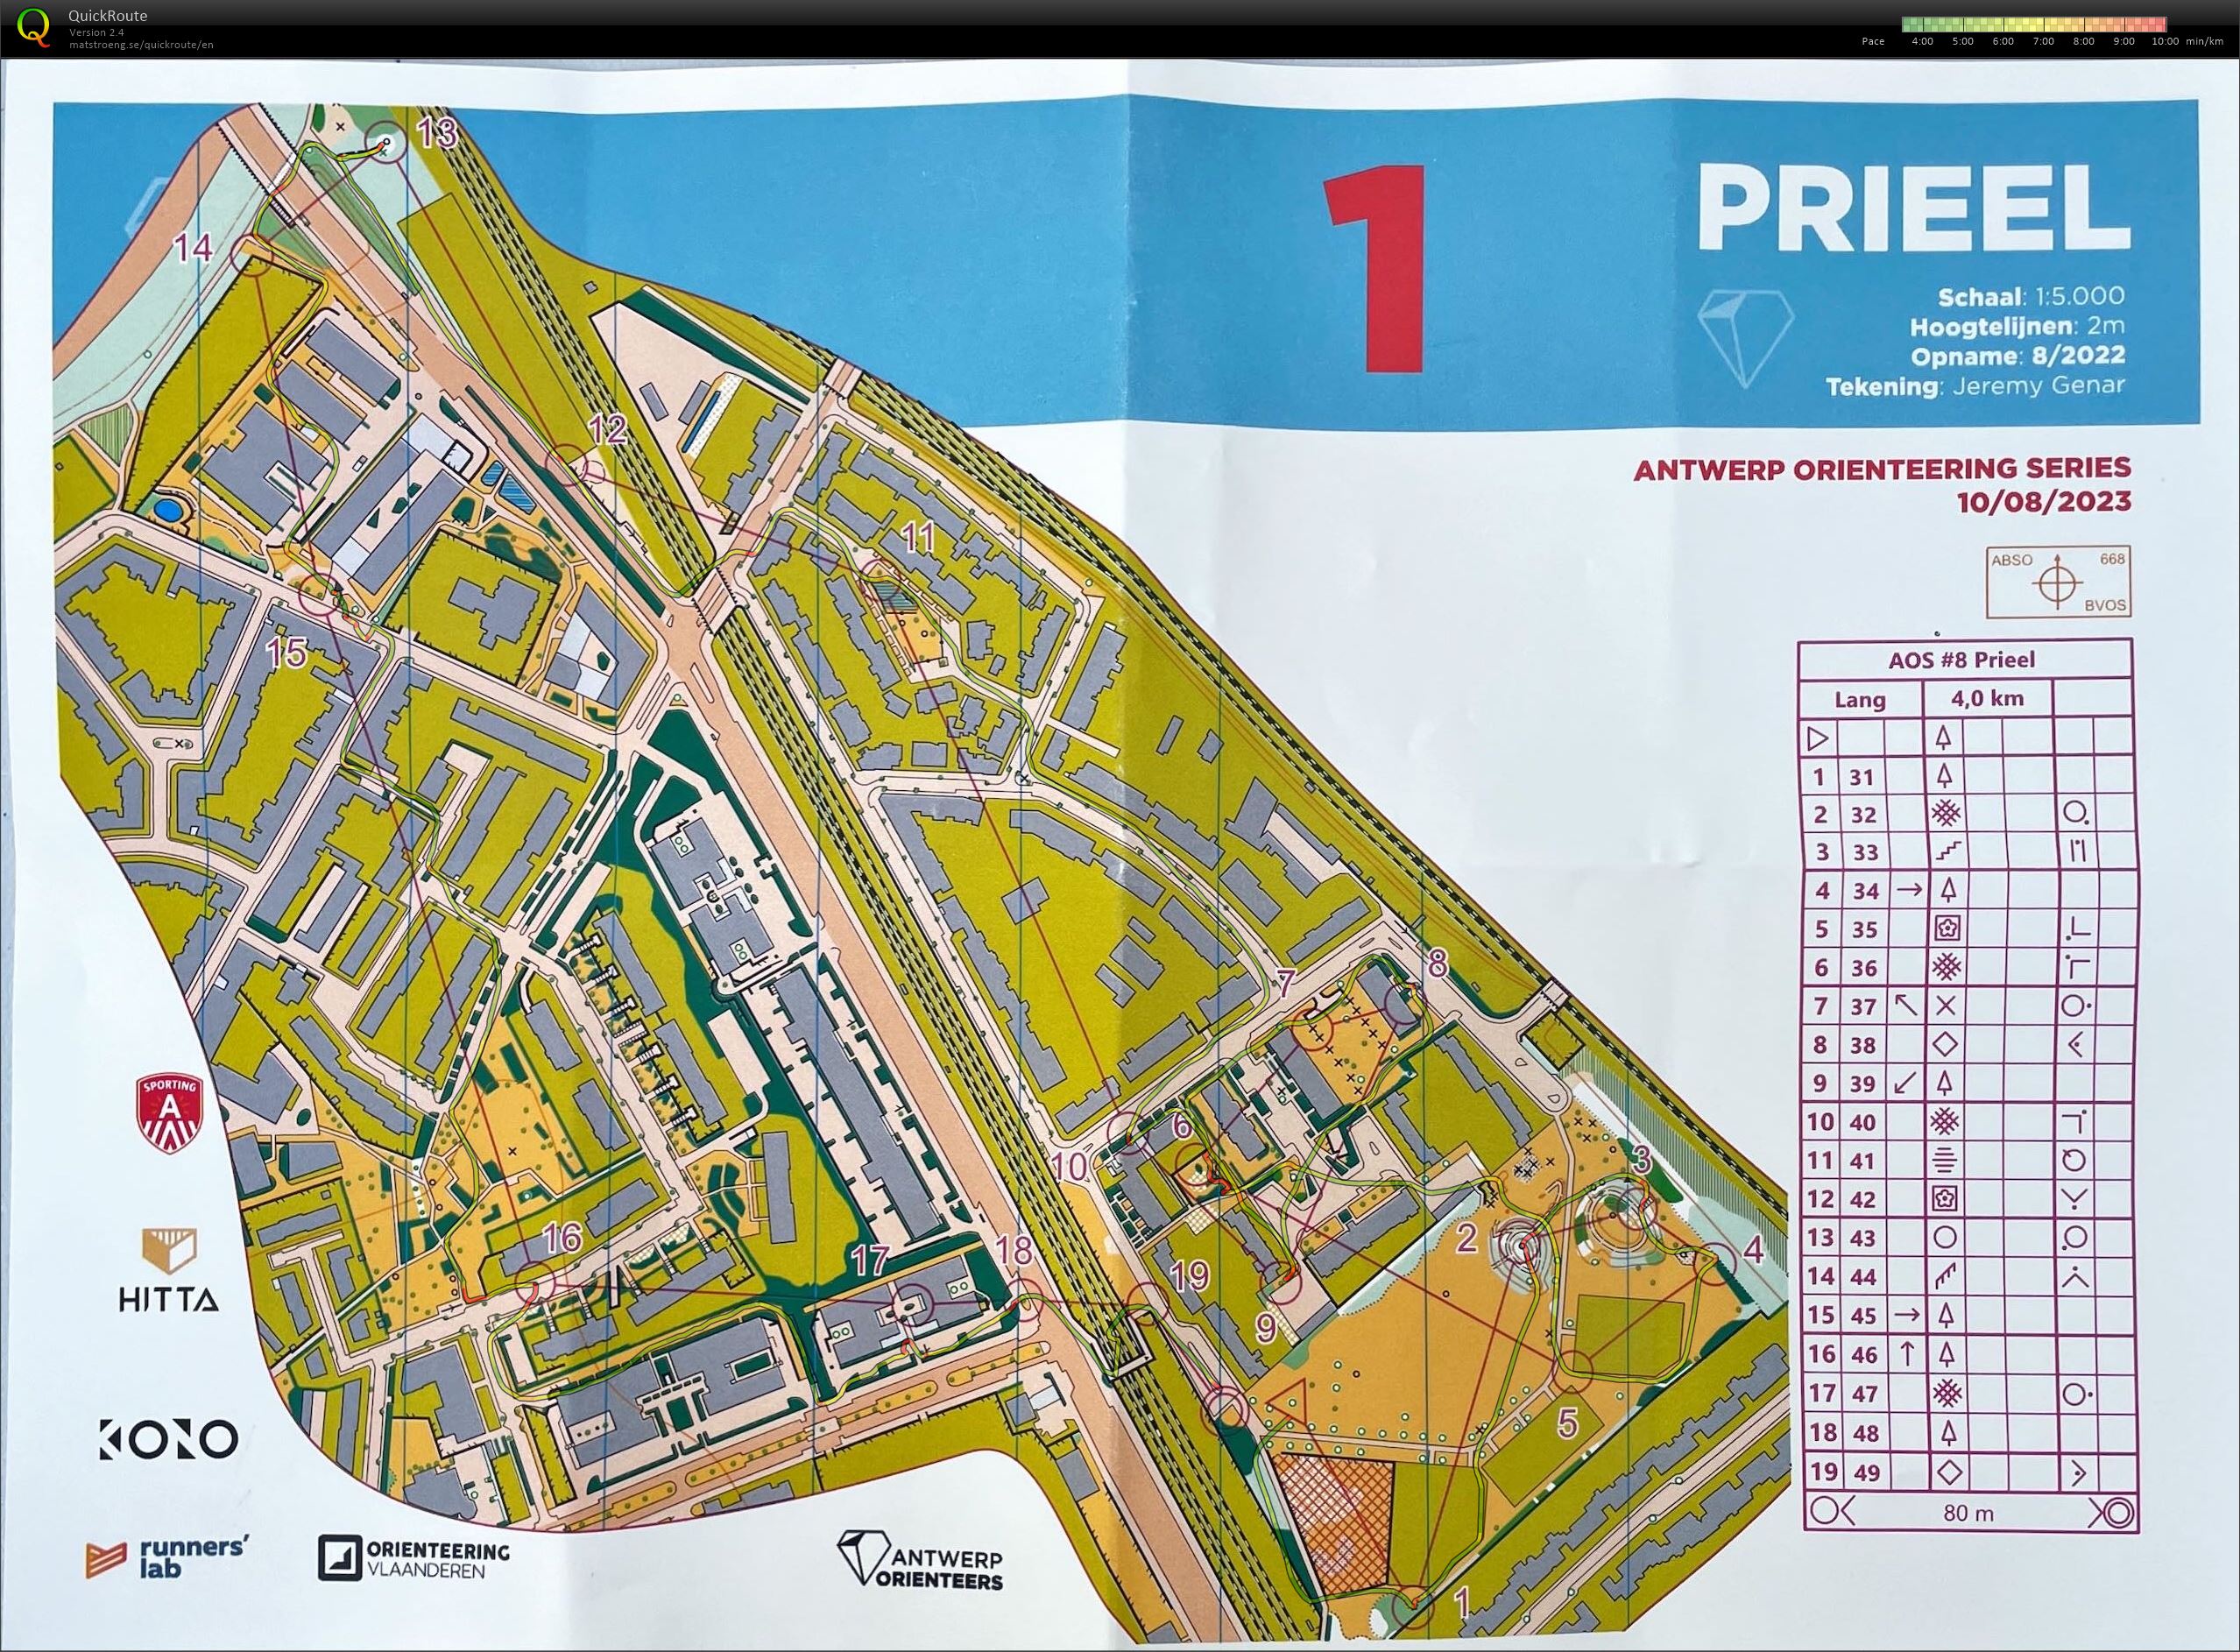 Antwerp Orienteering Series - Prieel - Lang (10-08-2023)